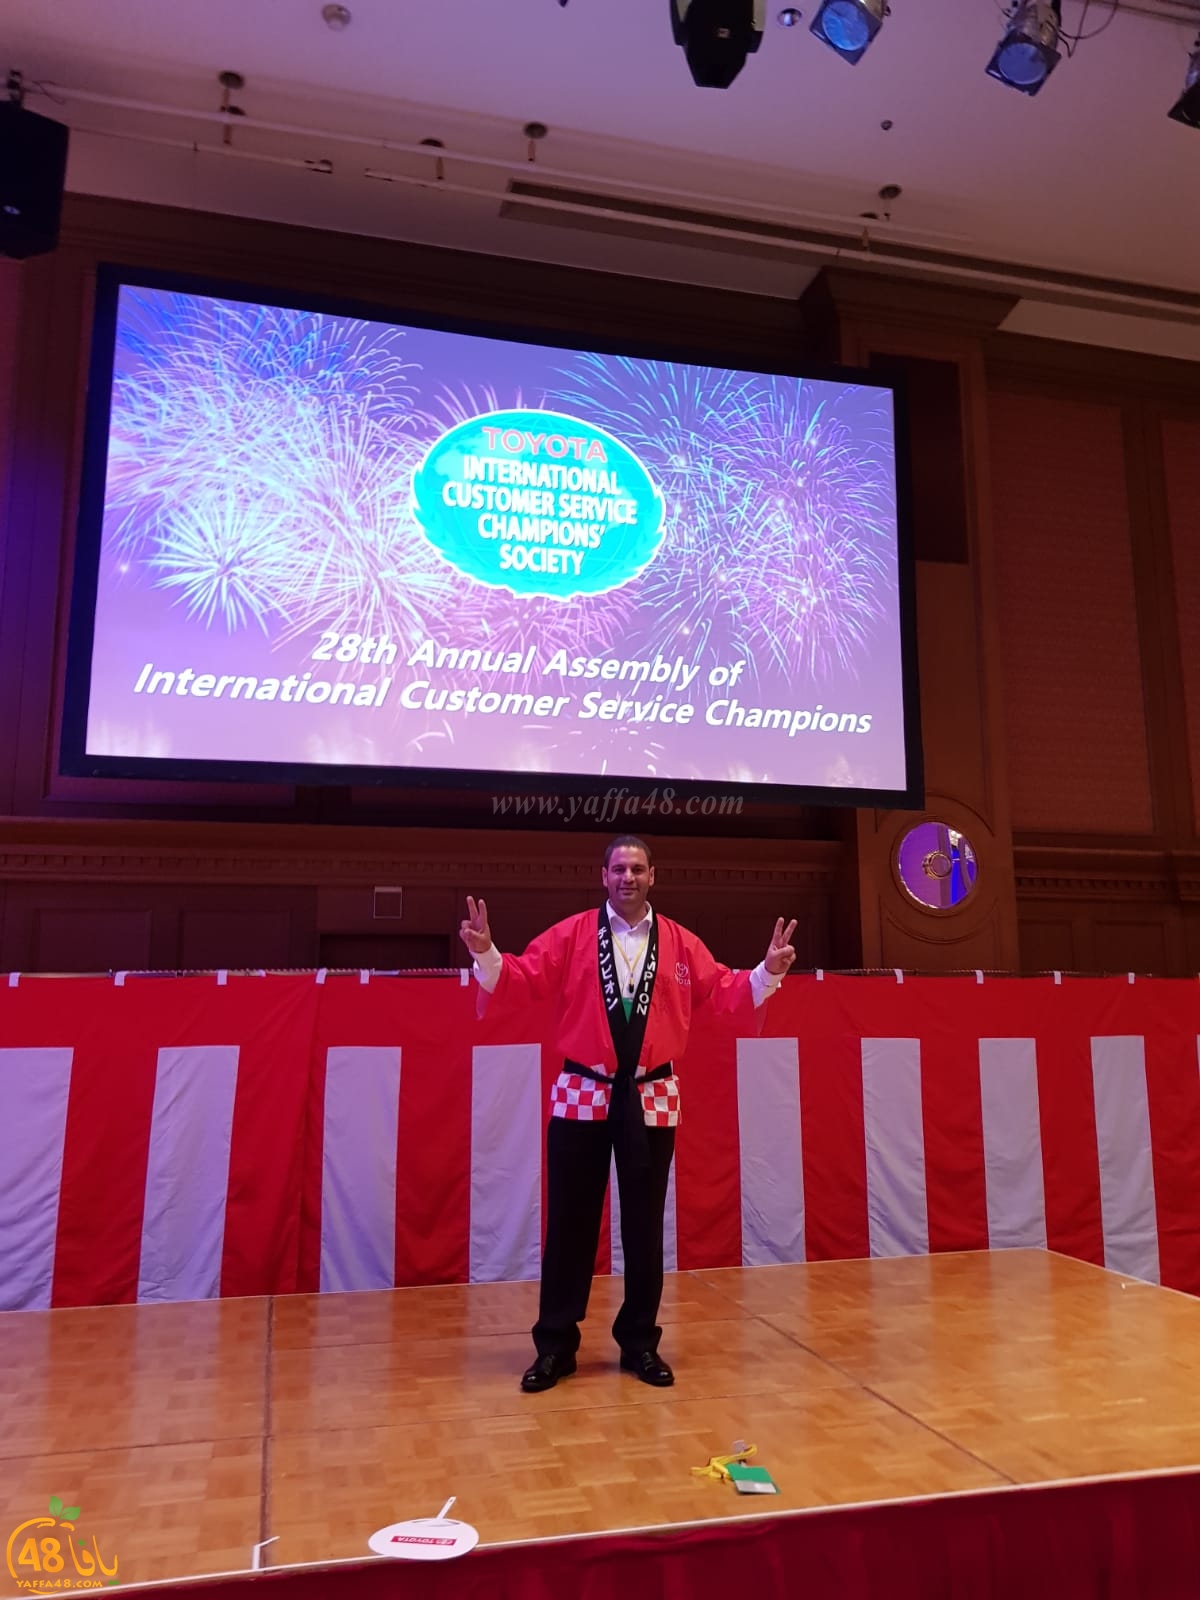 السيد وليد سكسك من يافا يُشارك في مسابقة عالمية لشركة تويوتا في اليابان